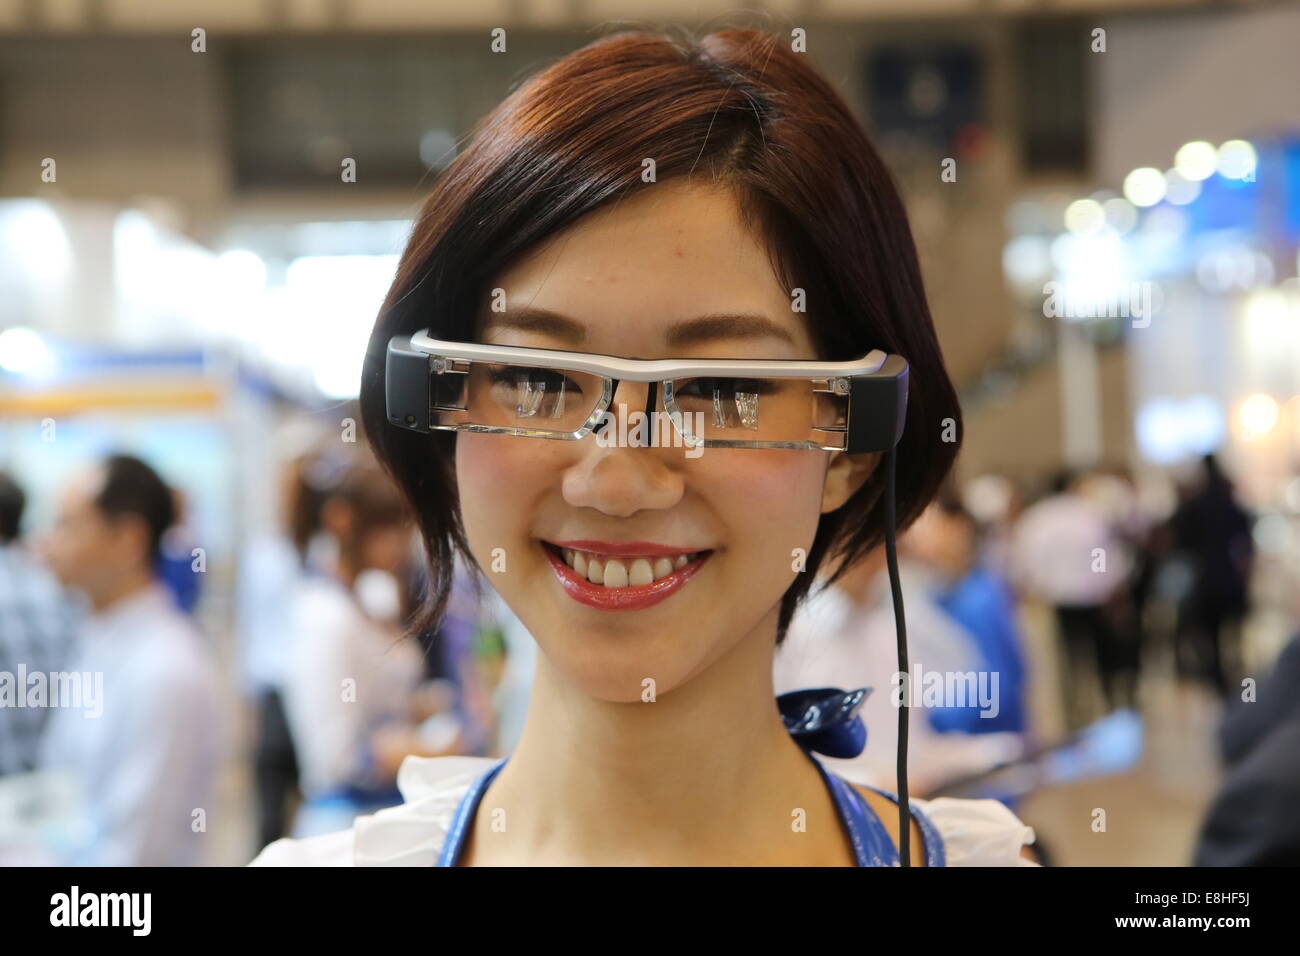 Tokyo, Giappone. Il 7 ottobre, 2014. Un modello indossa gli occhiali dati Epson Moverio BT-200 durante il CEATEC (mostra combinata di Tecnologie Avanzate) Giappone 2014 tenuto al Makuhari Messe a Chiba, a est di Tokyo, Giappone, 07 ottobre 2014. Secondo Toshiba, android è in grado di muovere le braccia e le mani senza intoppi e il giapponese utilizza il linguaggio dei segni. Android è il prototipo di sviluppare per i robot di servizio per assistere le persone in termini di benessere e di assistenza sanitaria. Credito: dpa picture alliance/Alamy Live News Foto Stock